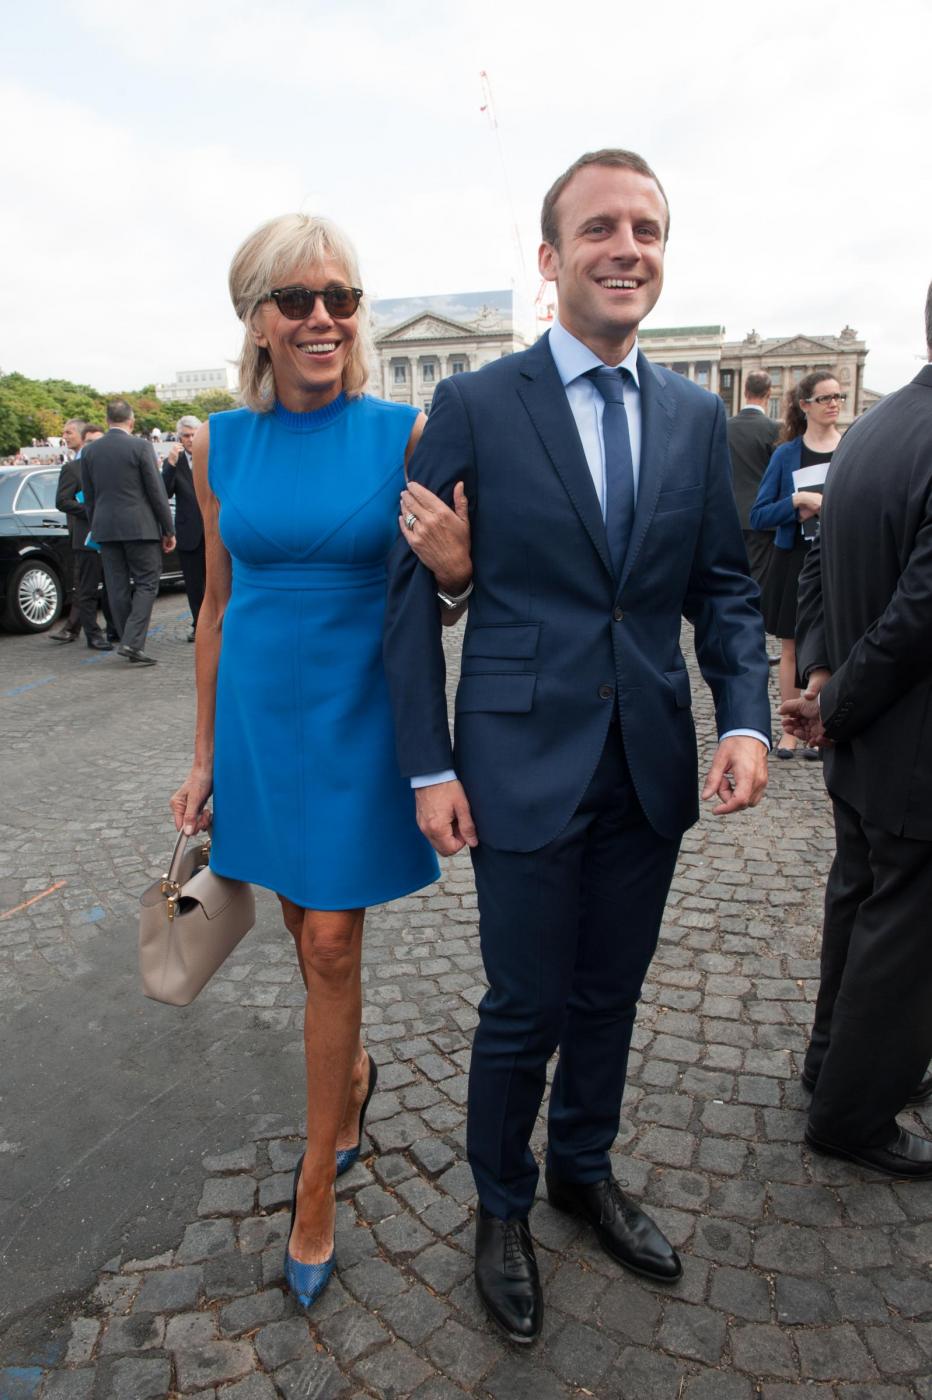 Macron e lթnseparabile Brigitte, lաmore fuori dagli schemi